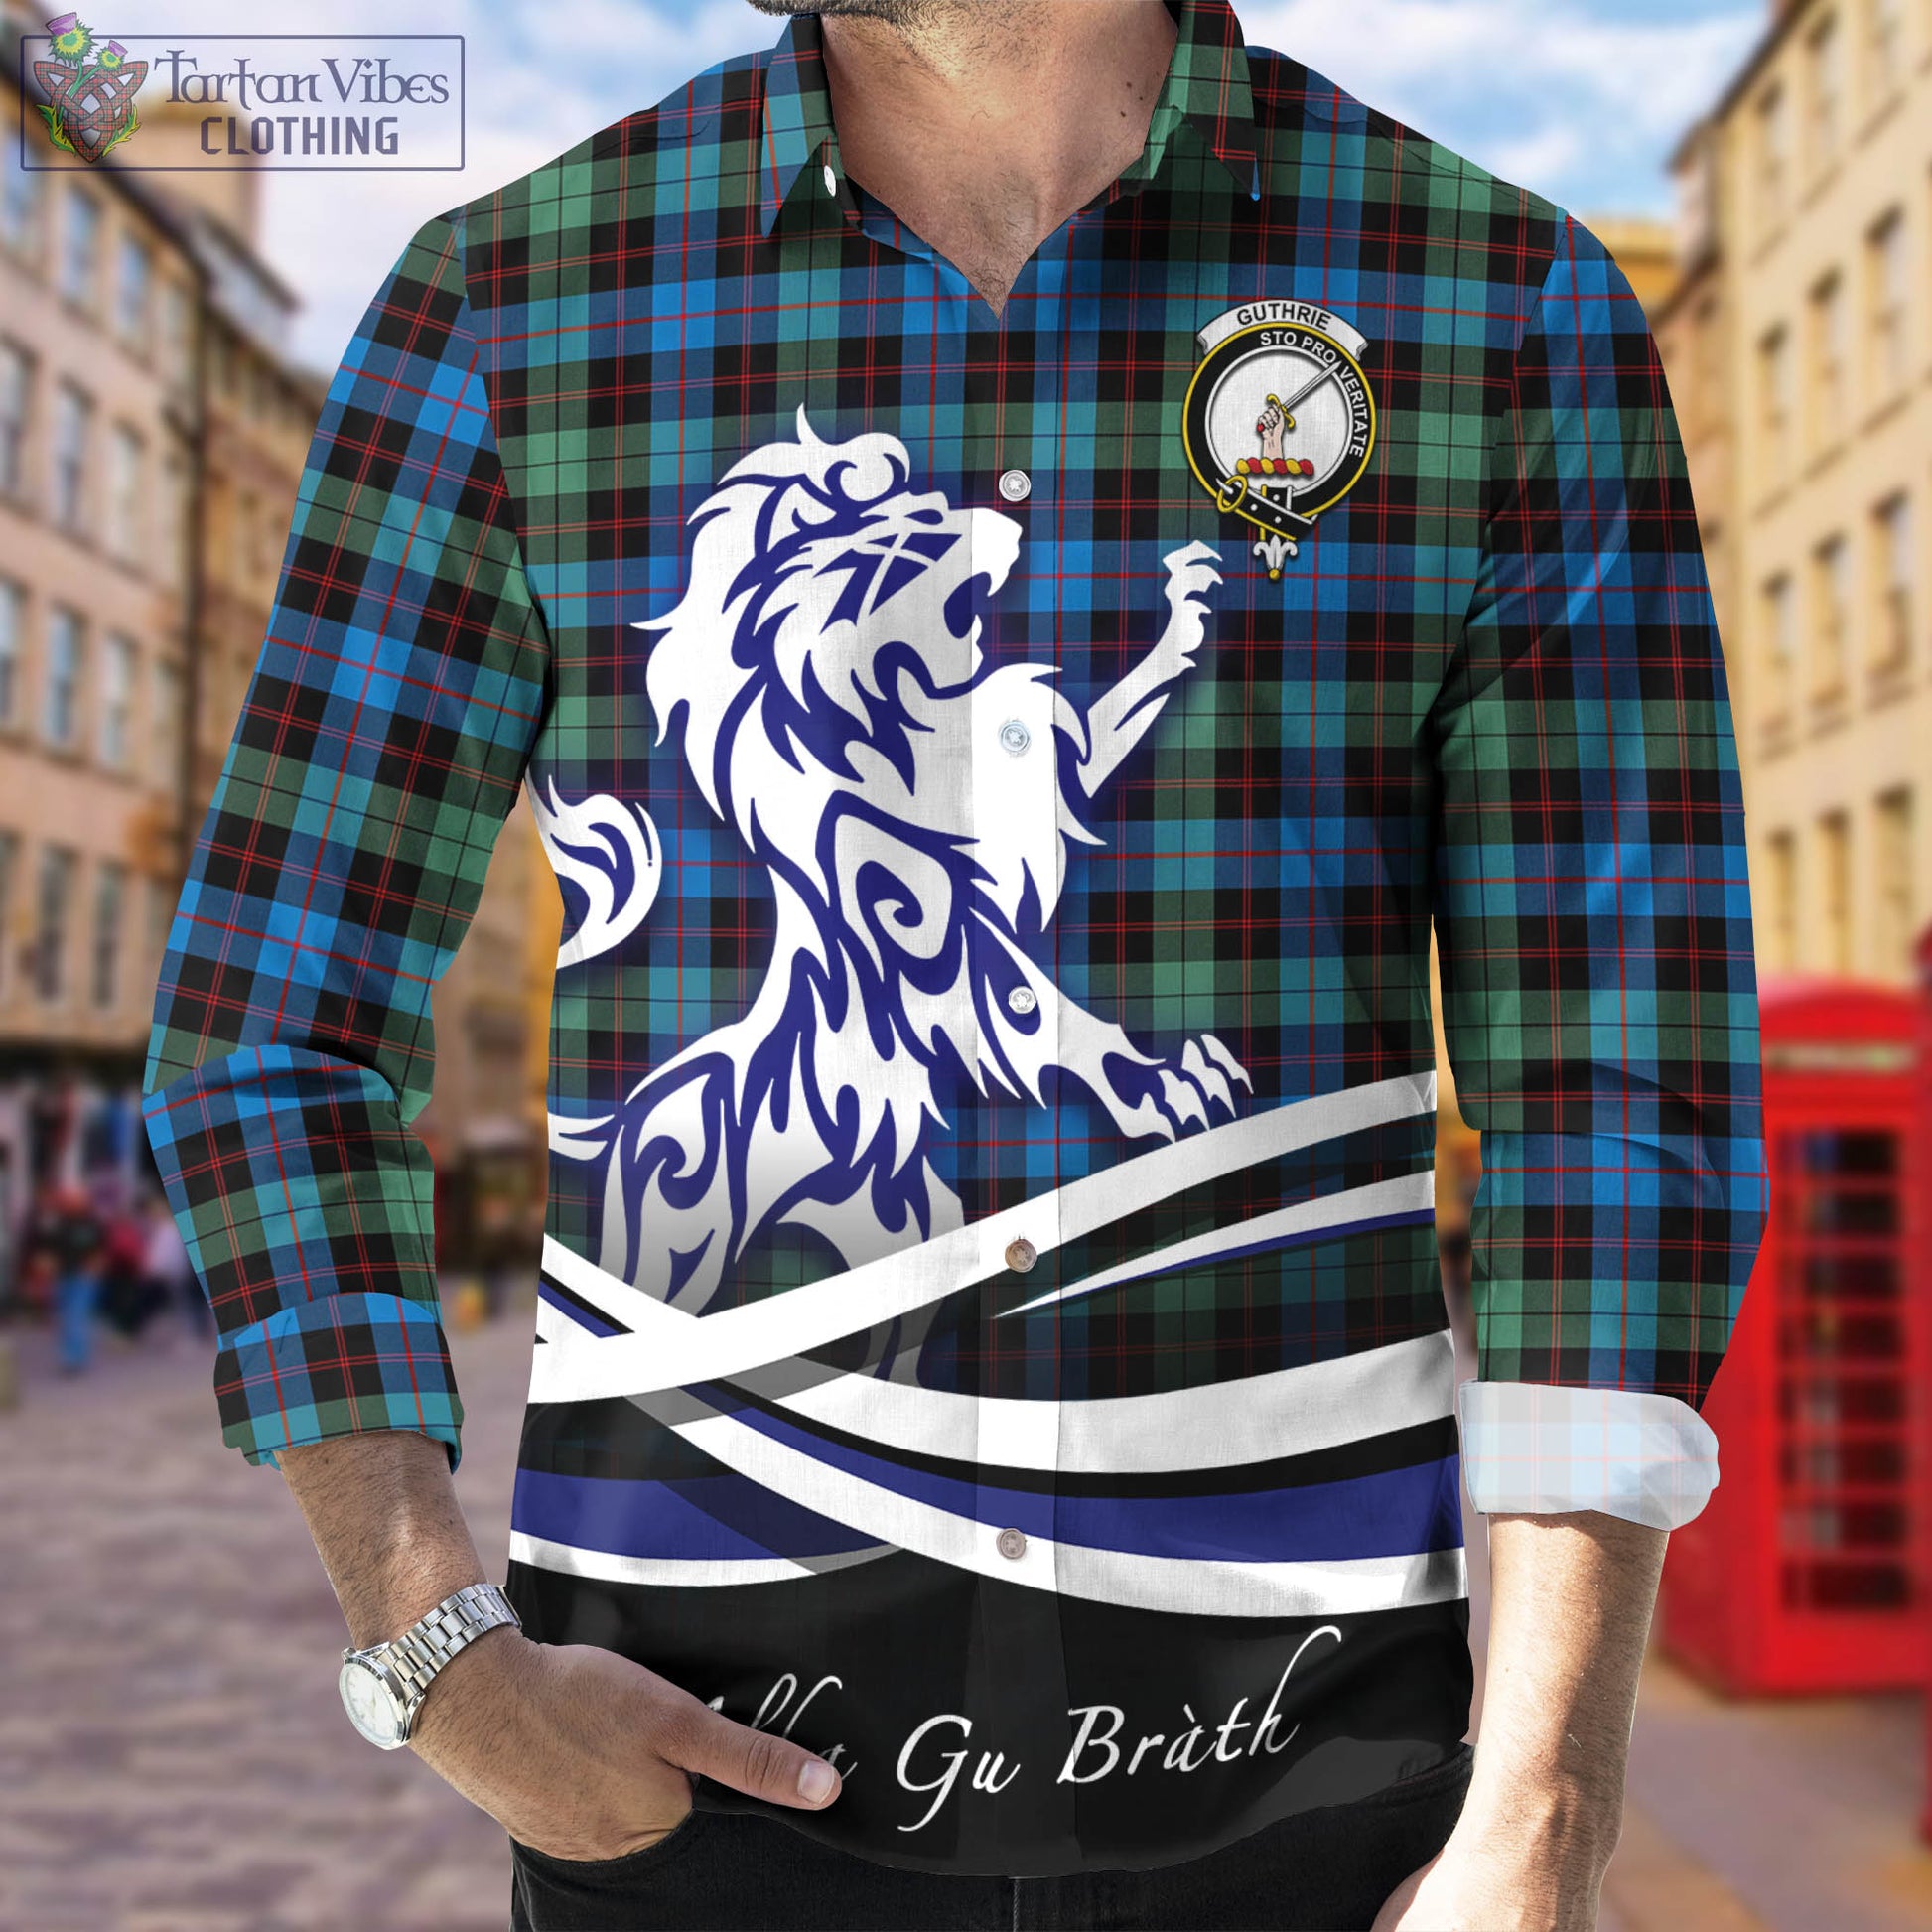 guthrie-ancient-tartan-long-sleeve-button-up-shirt-with-alba-gu-brath-regal-lion-emblem